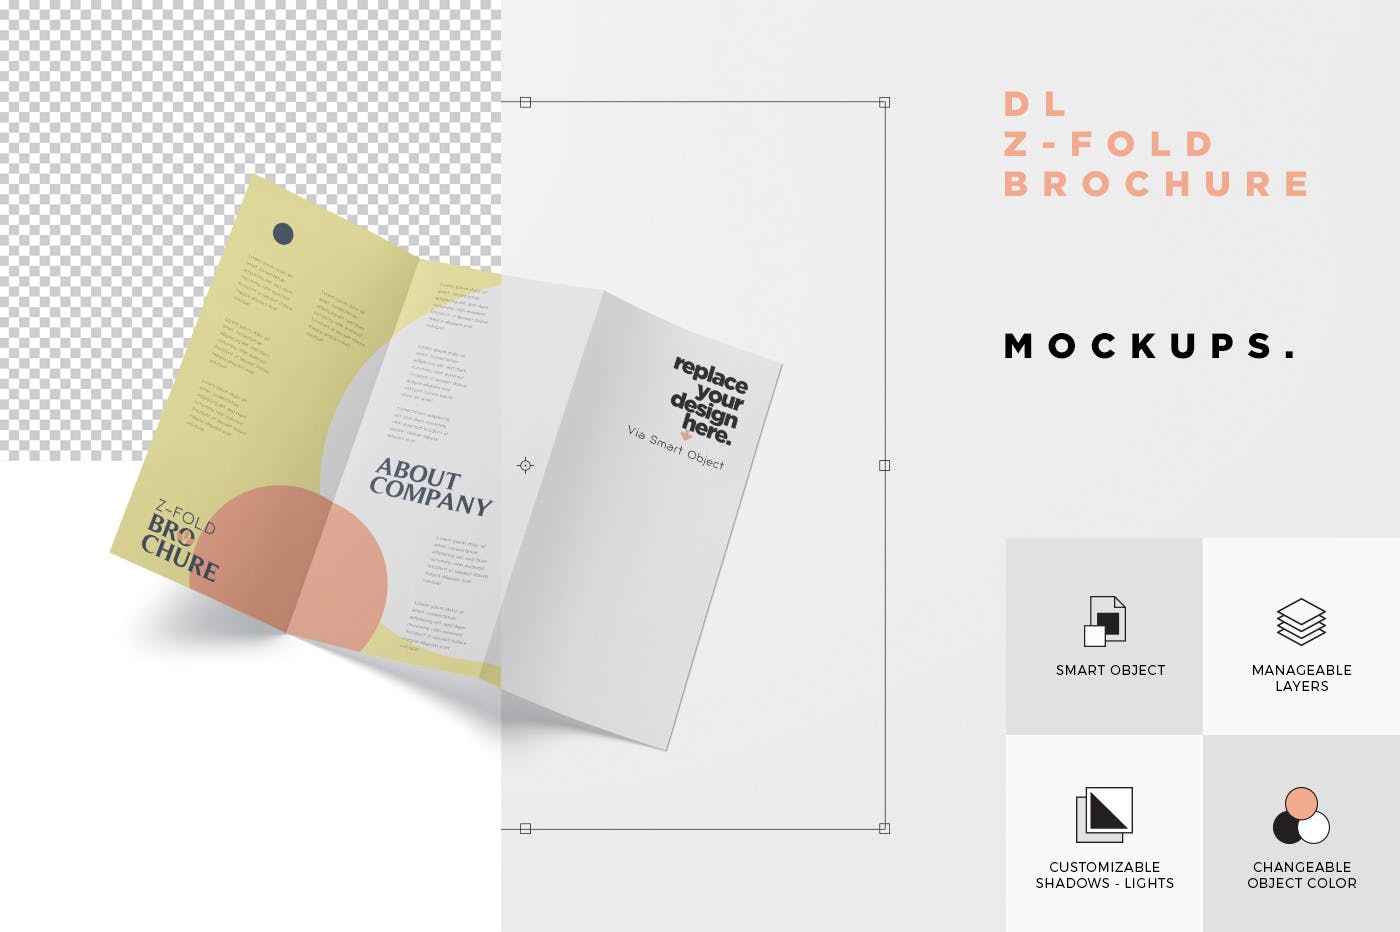 三折页设计风格企业传单/宣传单设计图样机16图库精选 DL Z-Fold Brochure Mockup – 99 x 210 mm Size插图(7)